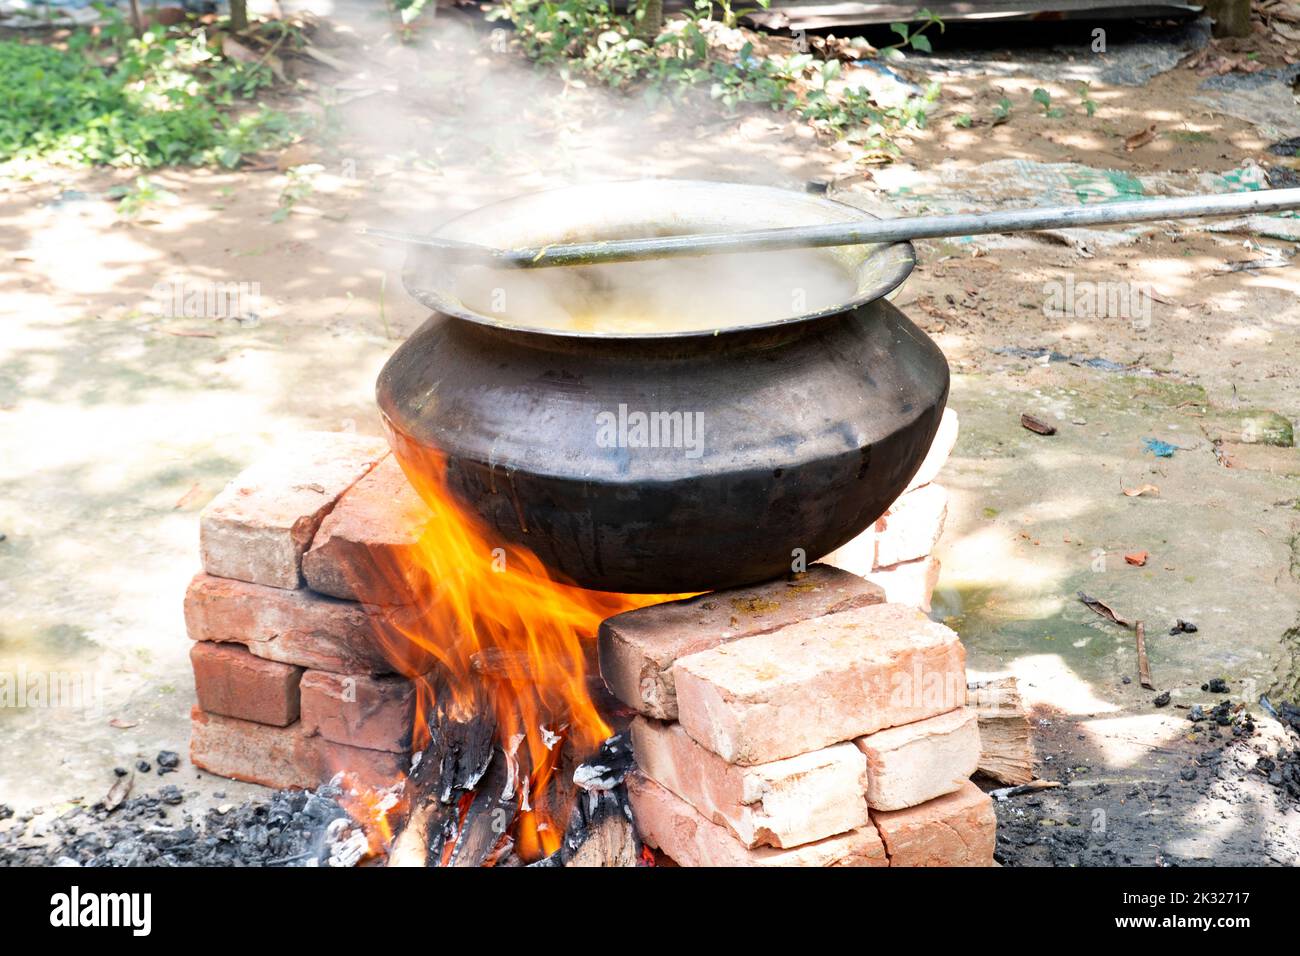 Biryani cucina in un villaggio festa su un forno temporaneo in mattoni. Cucina all'aperto per molte persone in una grande padella di alluminio con fuoco di legno. Foto Stock